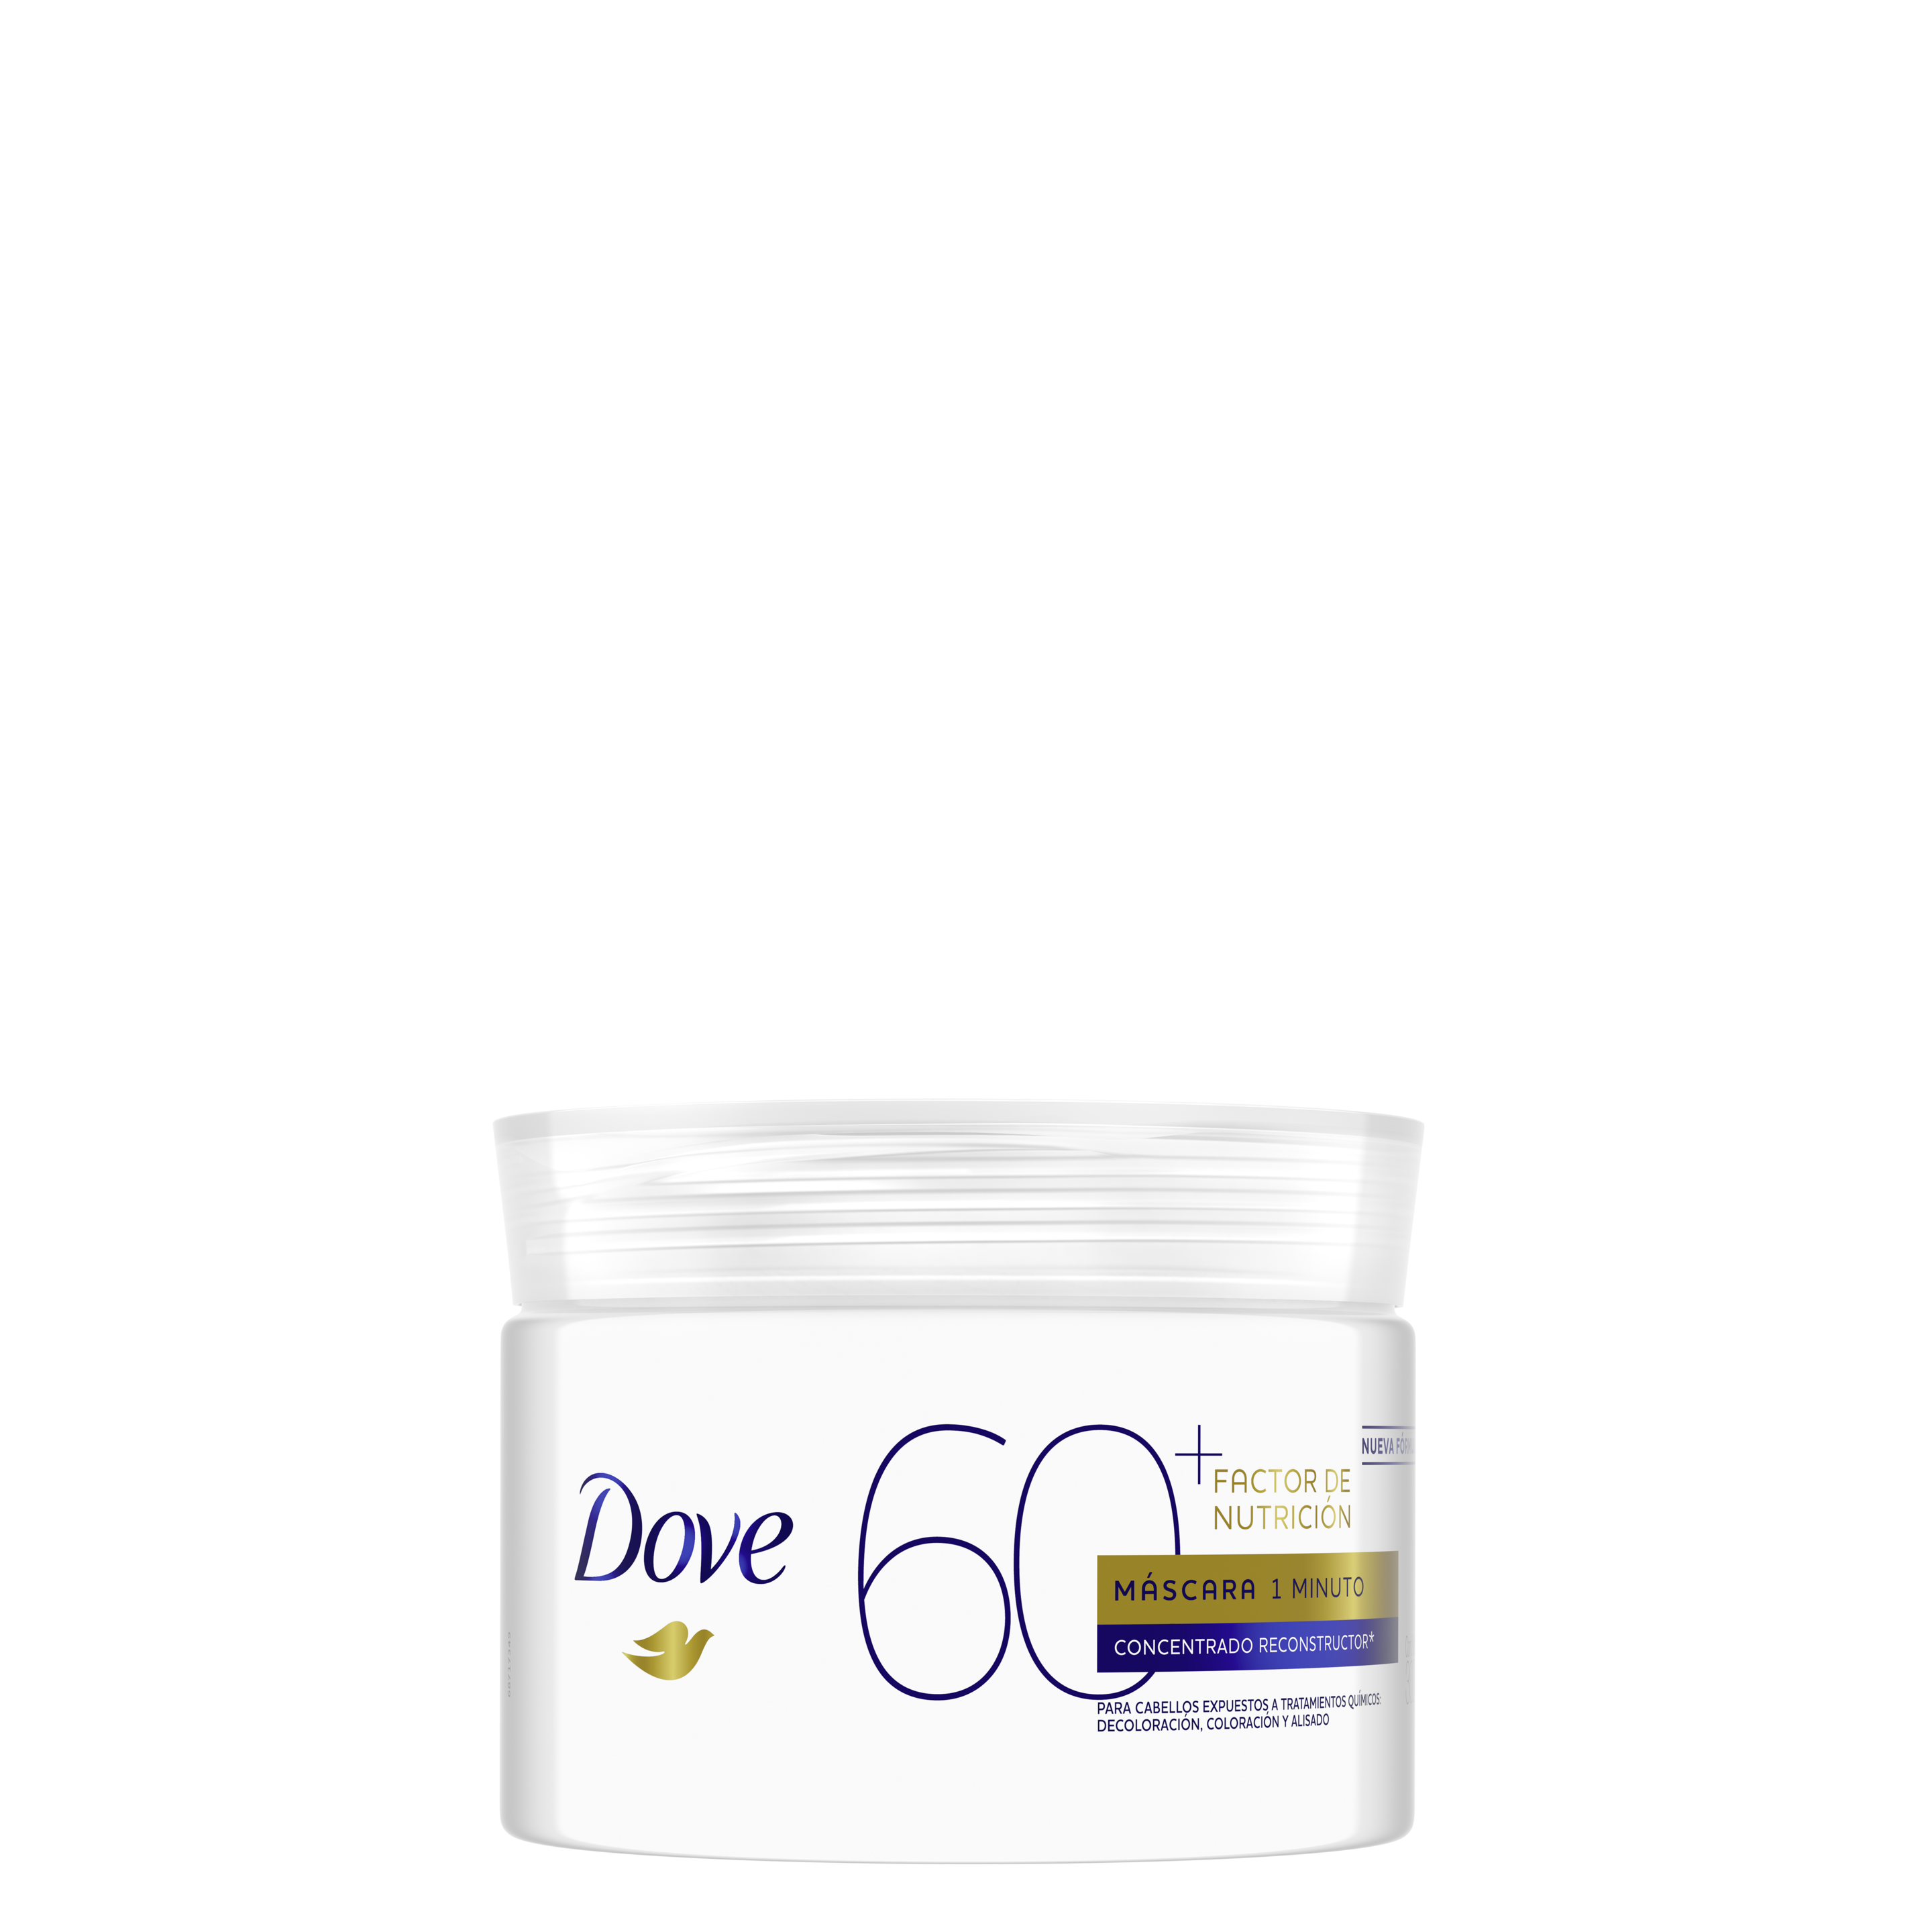 Máscara de Tratamiento Dove Factor de Nutrición 60